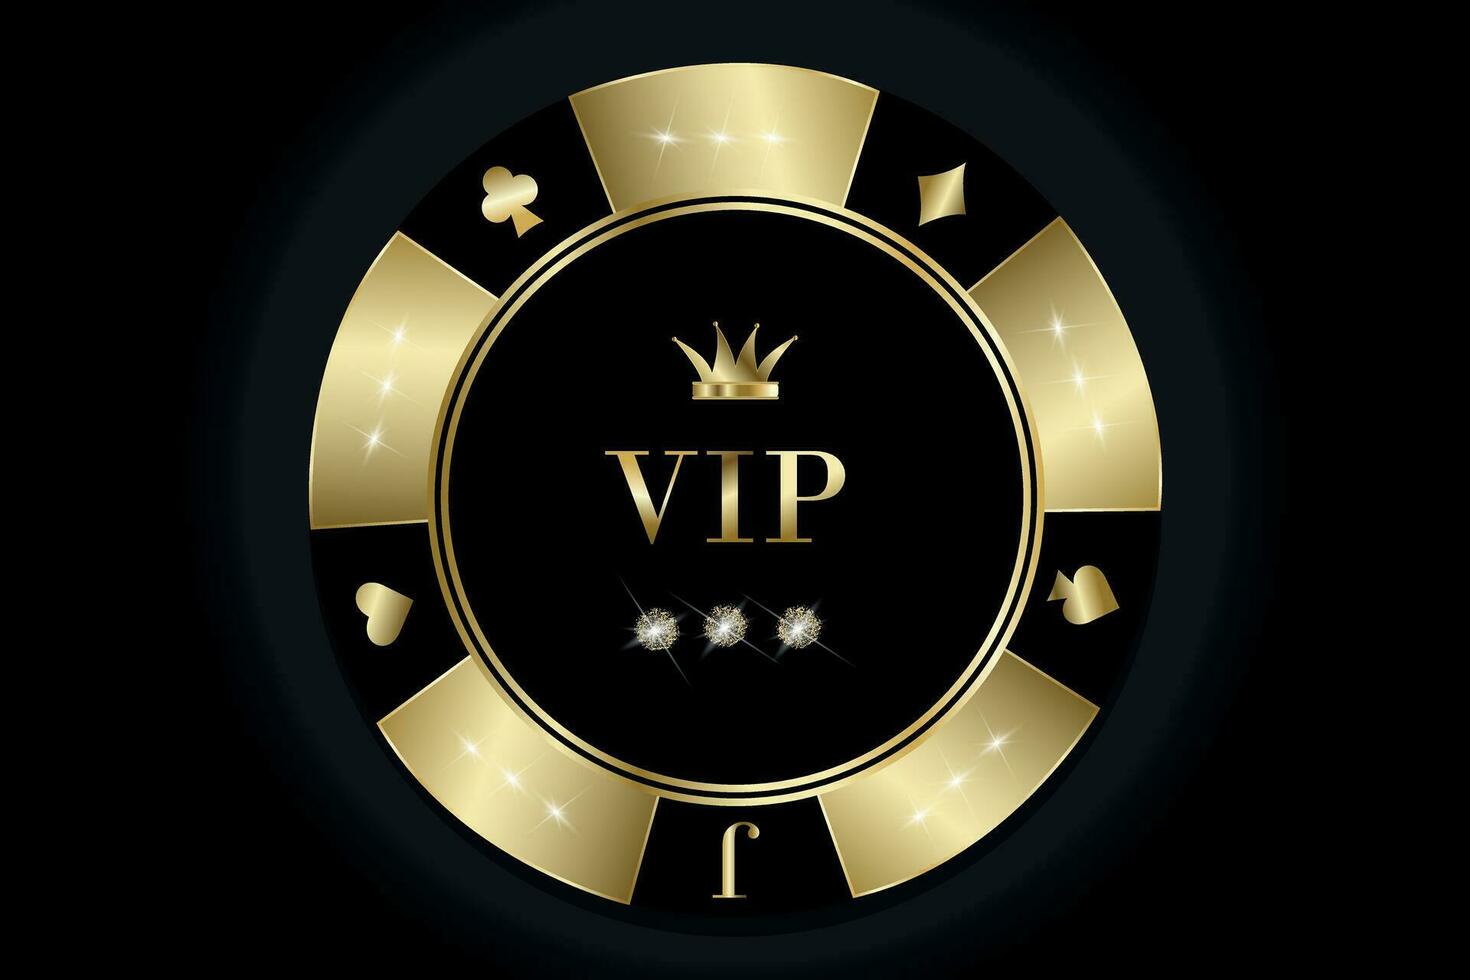 VIP oro casino chip. casino póker chip elemento, juego juego aislado en negro antecedentes. vector ilustración para tarjetas, casino, juego diseño, publicidad. casino concepto.